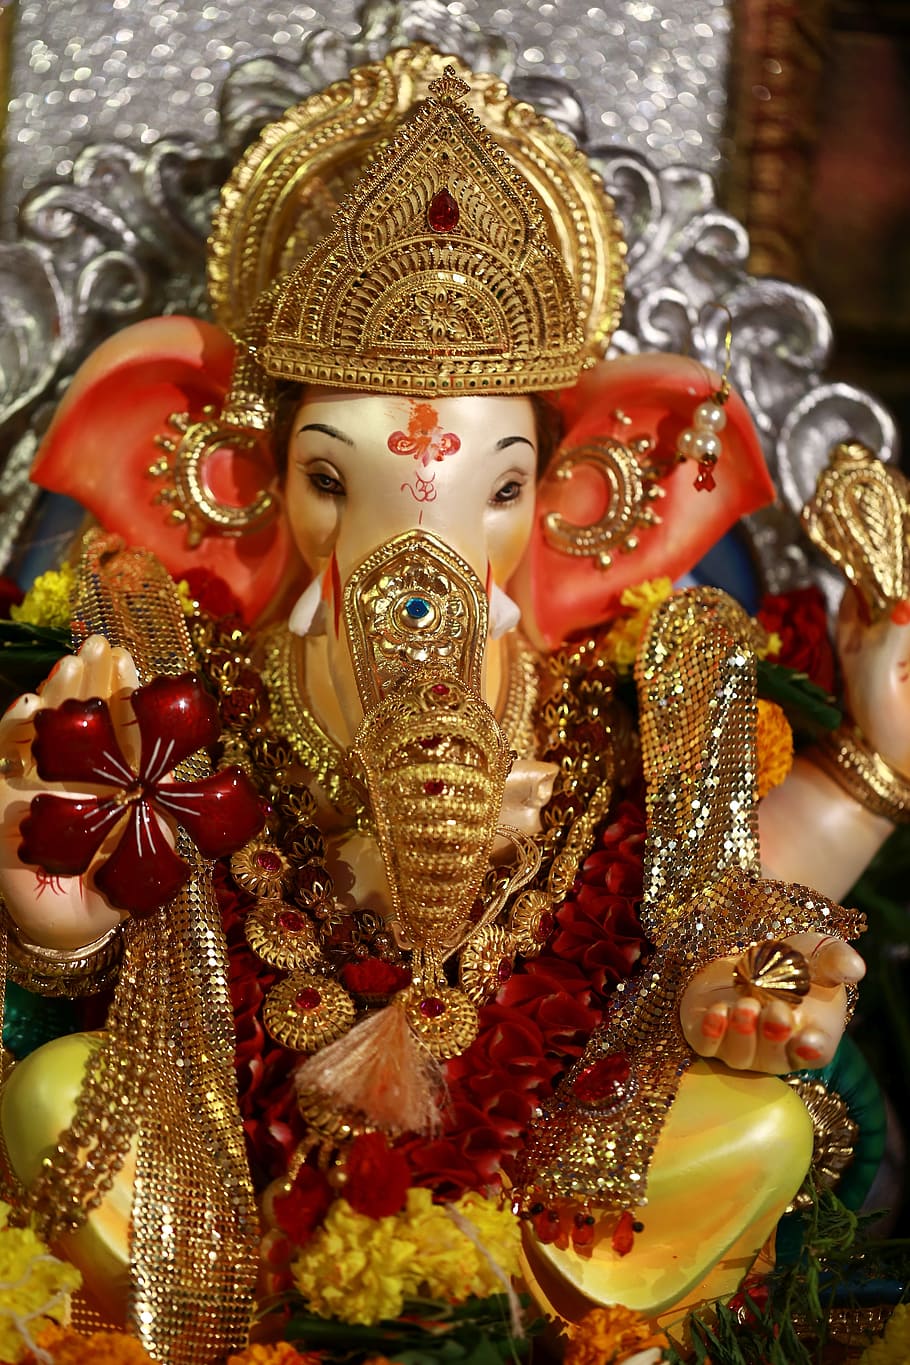 코끼리 조각상, 코끼리, 가나 파티, 힌두교 신, 신, 인간의 표현, 미술 및 공예, 표현, 클로즈업, 판매